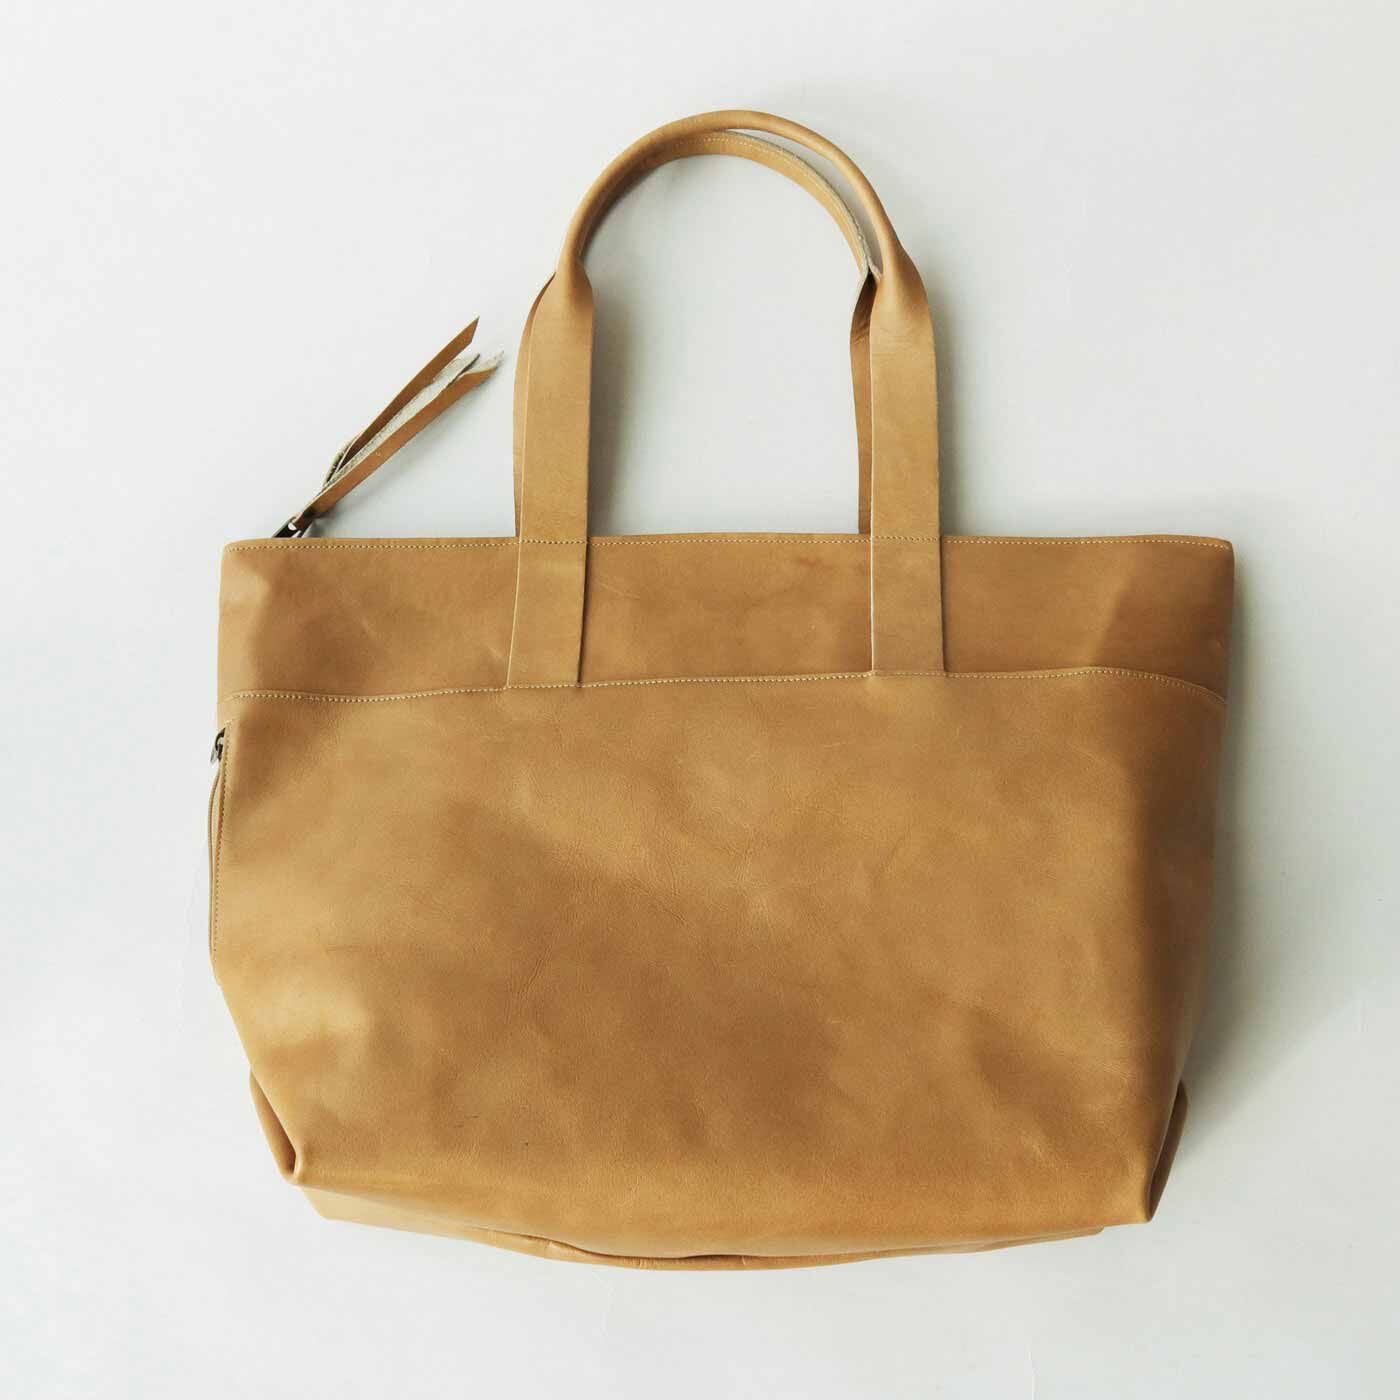 ＆Stories|プロダクトデザイナーと作った 職人本革のお仕事鞄〈ミルクティーベージュ〉[本革　鞄：日本製]|ミルクティベージュ色の革で作りました。丈夫な革で作っているから長く使えて、しかも使い込むほどいい表情になっていきます。